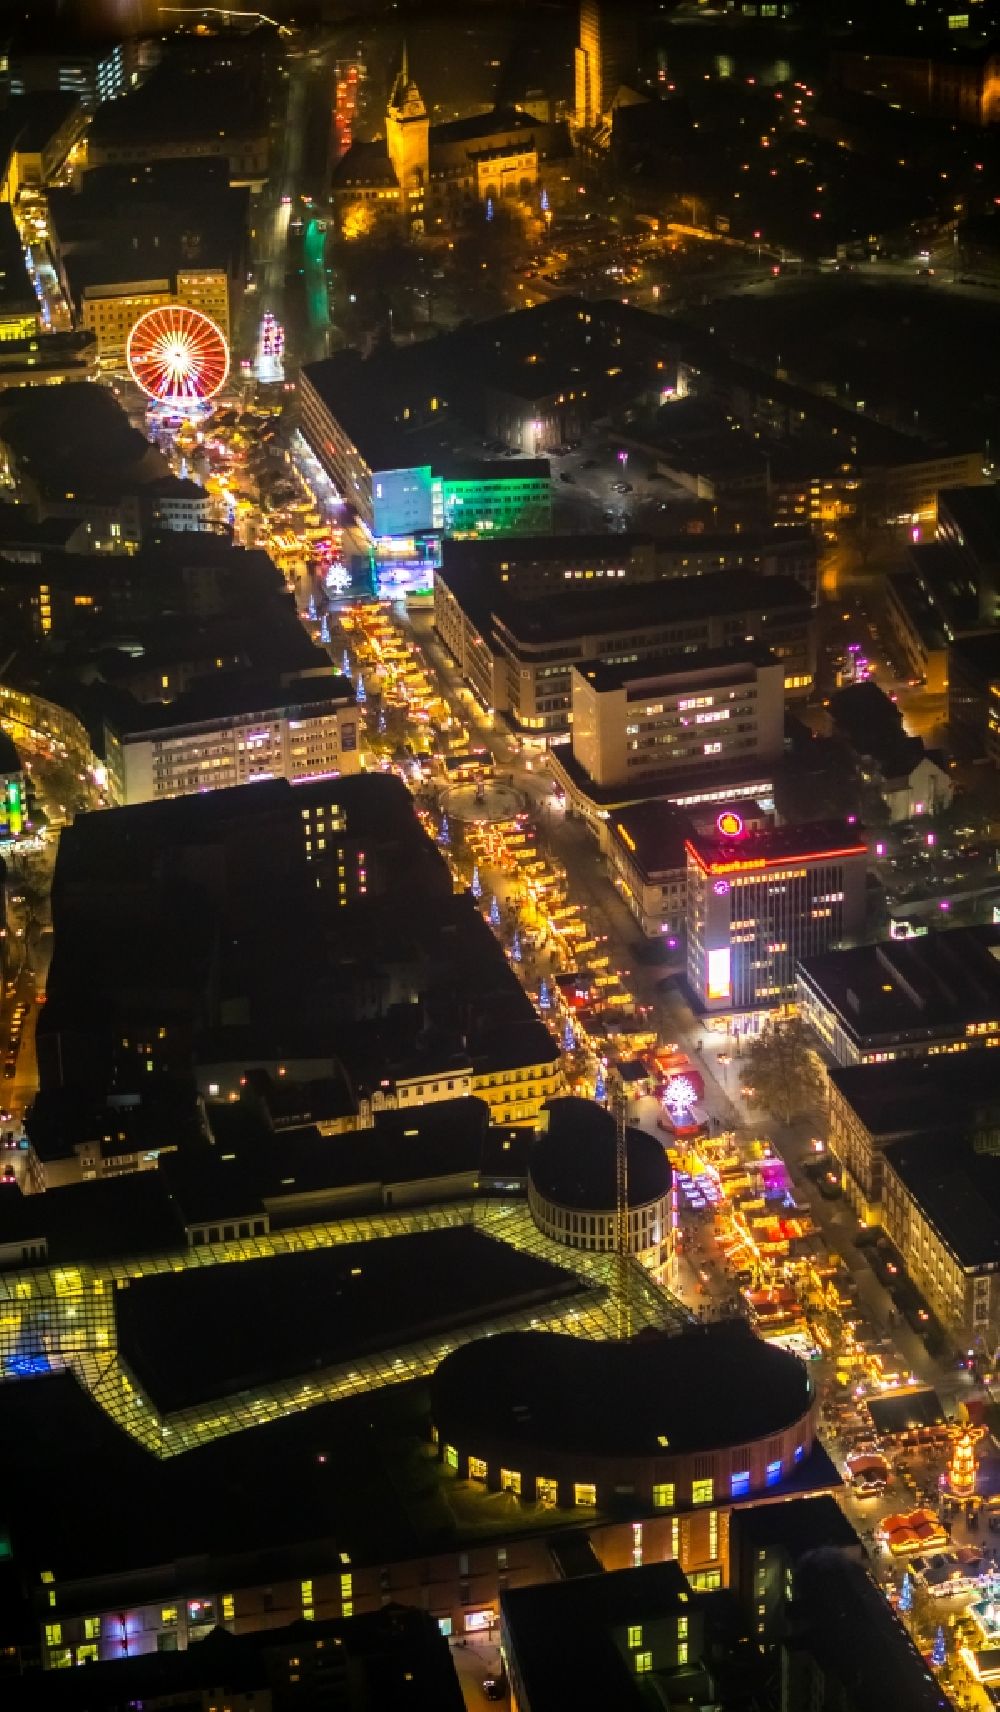 Nacht-Luftaufnahme Duisburg - Nachtluftbild Weihnachtsmarkt- Veranstaltungsgelände und Verkaufs- Hütten und Buden auf der Königsstraße in Duisburg im Bundesland Nordrhein-Westfalen